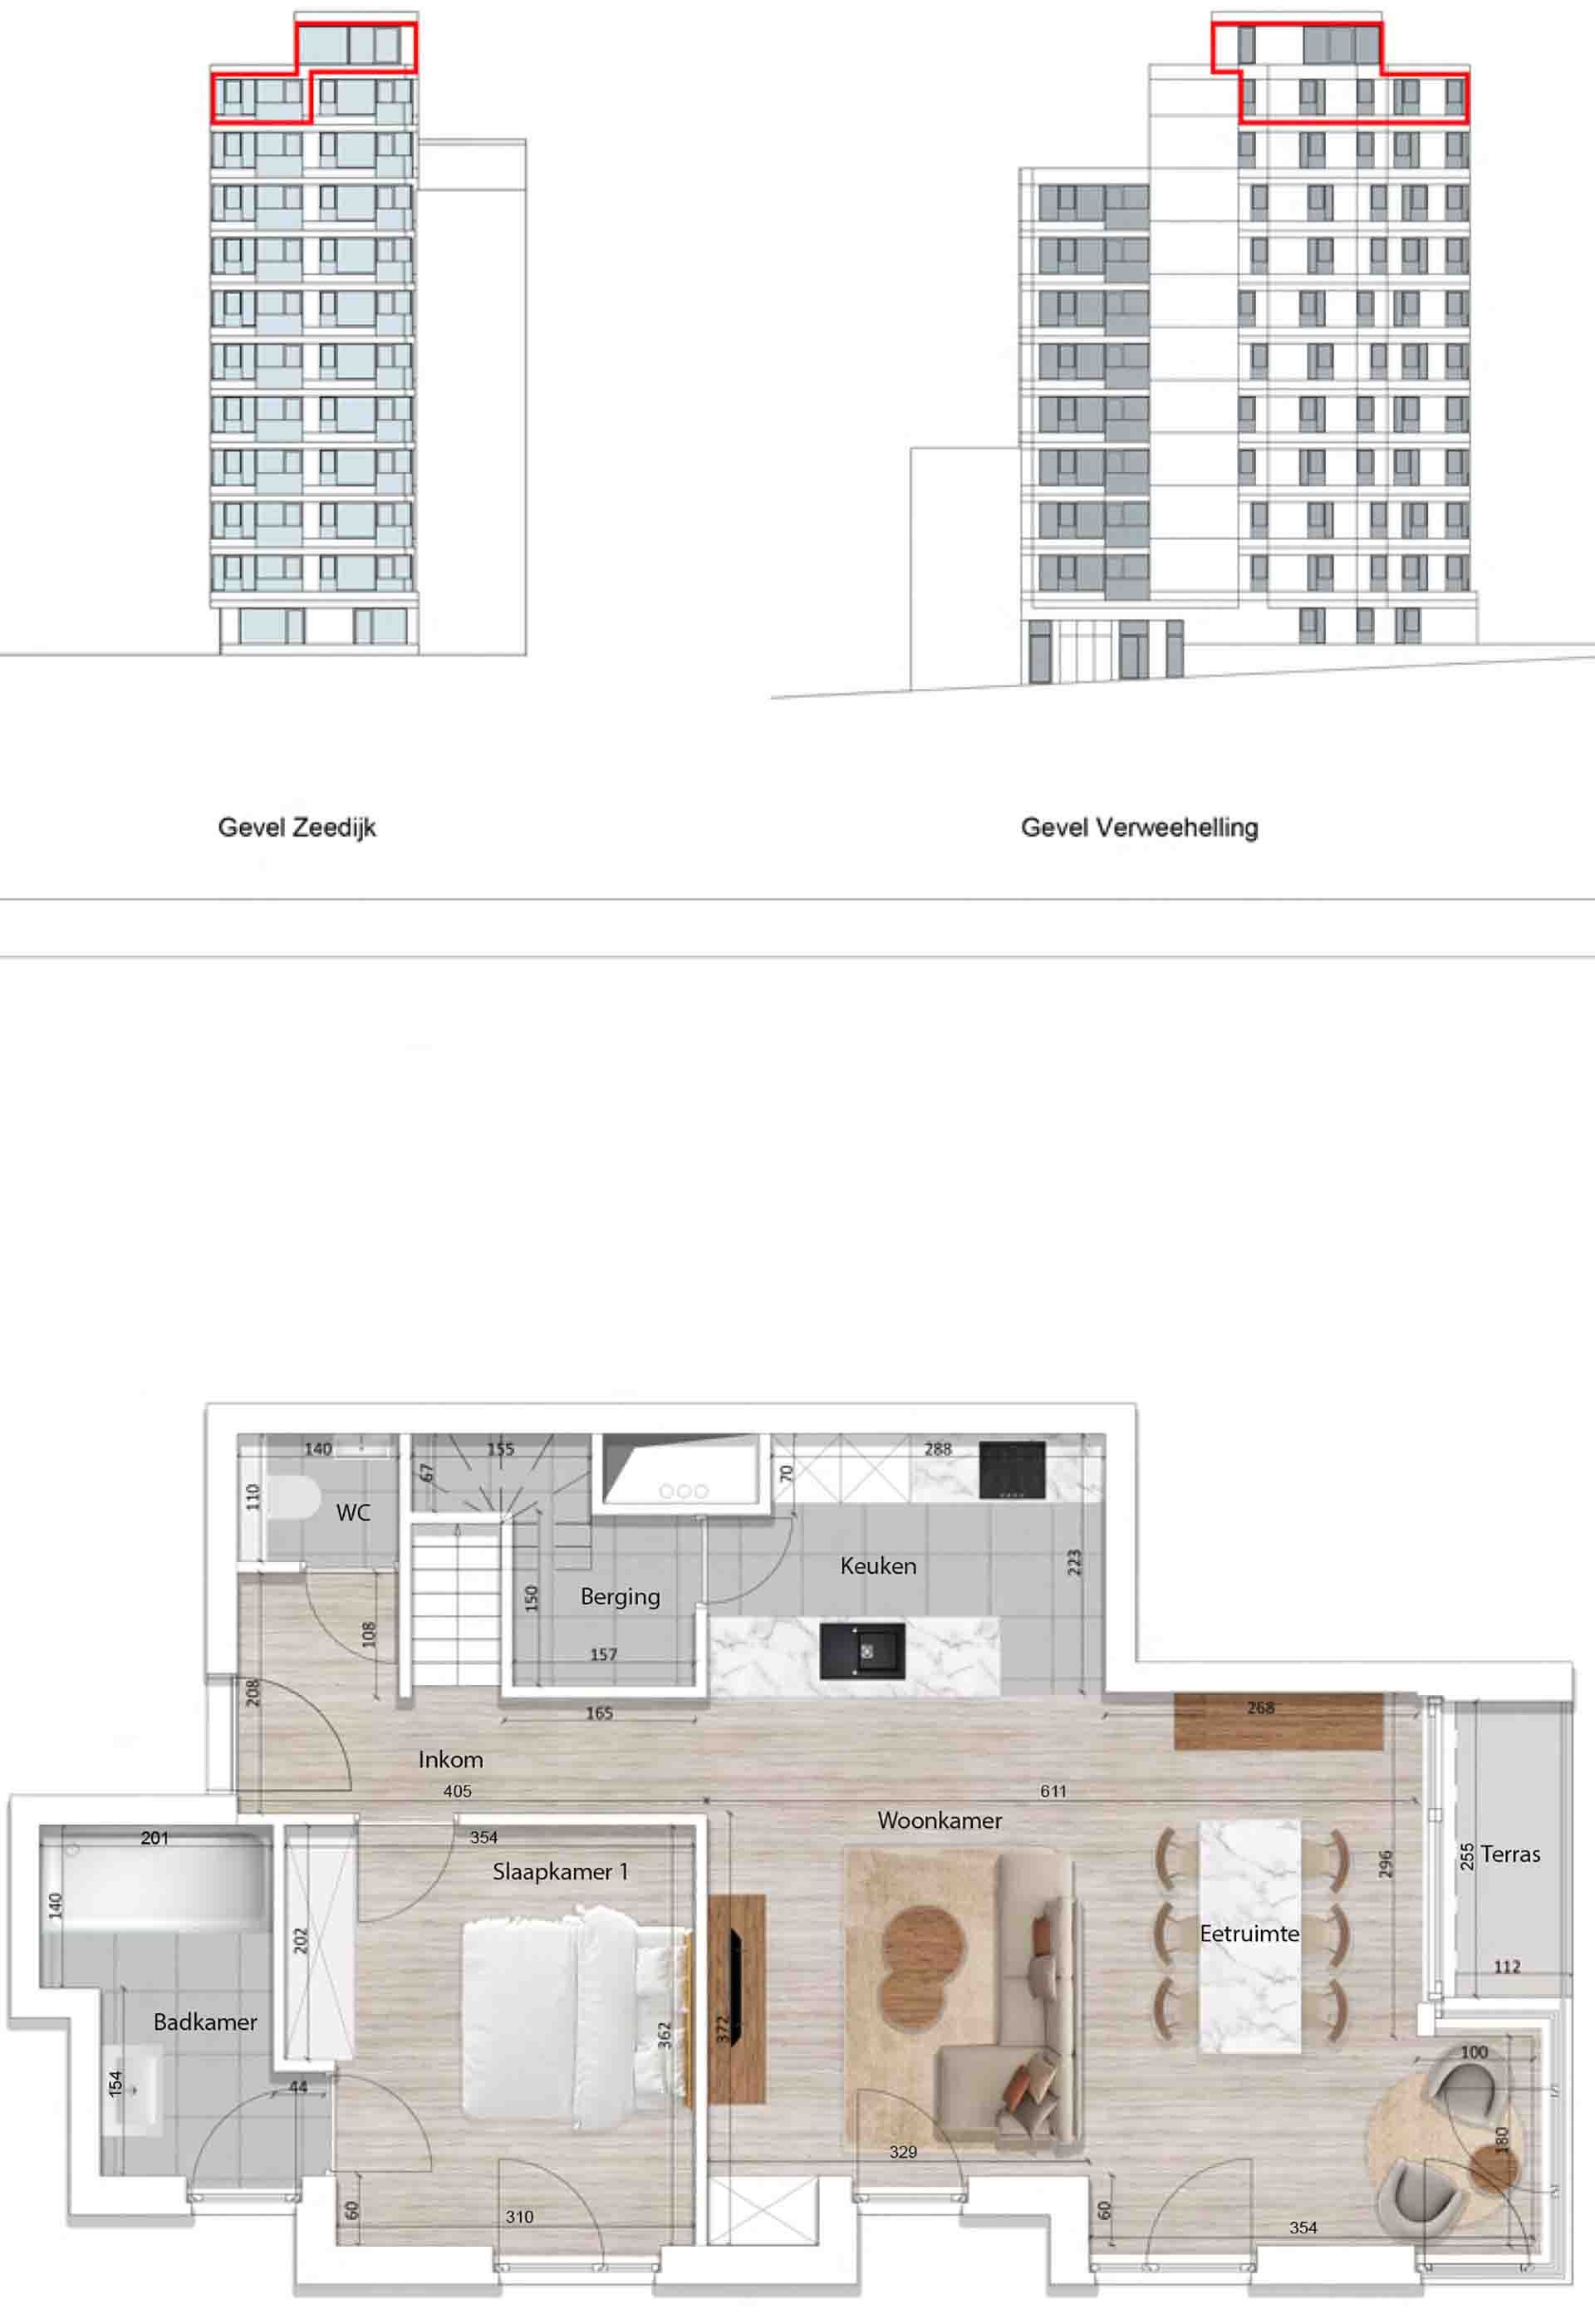 Residentie <br/> Pier - image appartement-te-koop-blankenberge-residentie-pier-plan-1001-variant-1-beneden on https://hoprom.be